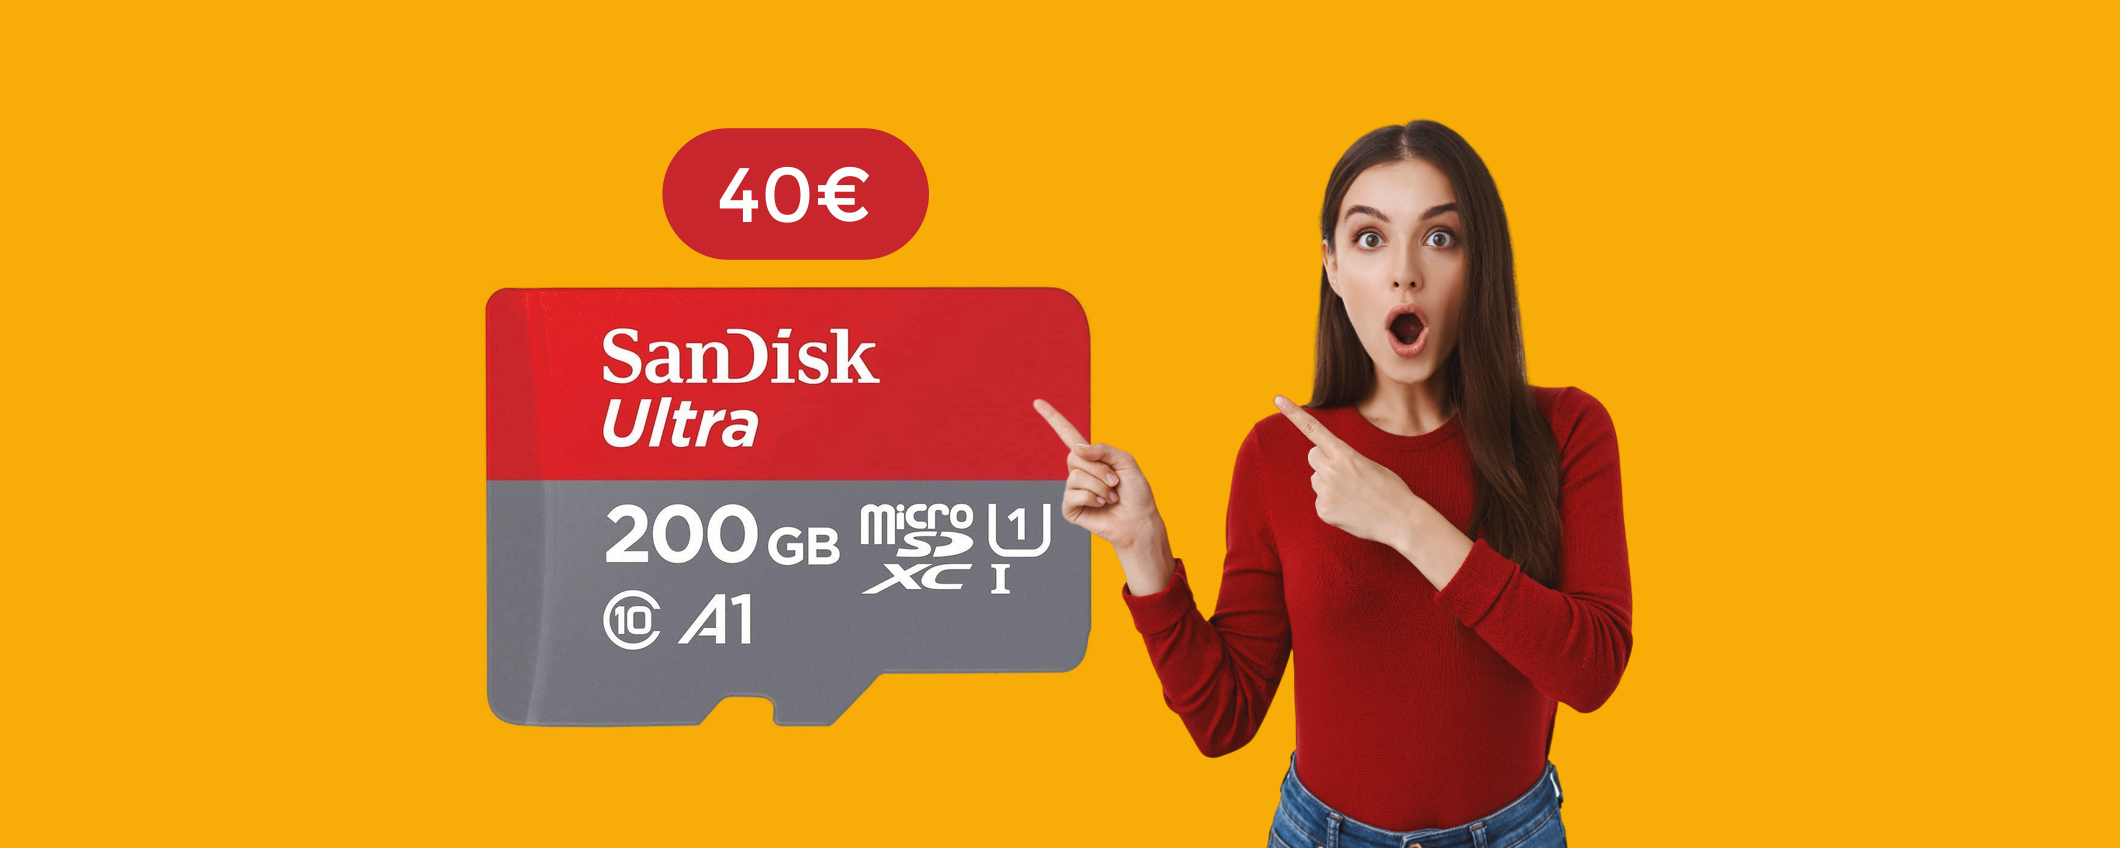 MicroSD 200GB SanDisk: tutto lo spazio che ti serve con appena 40€